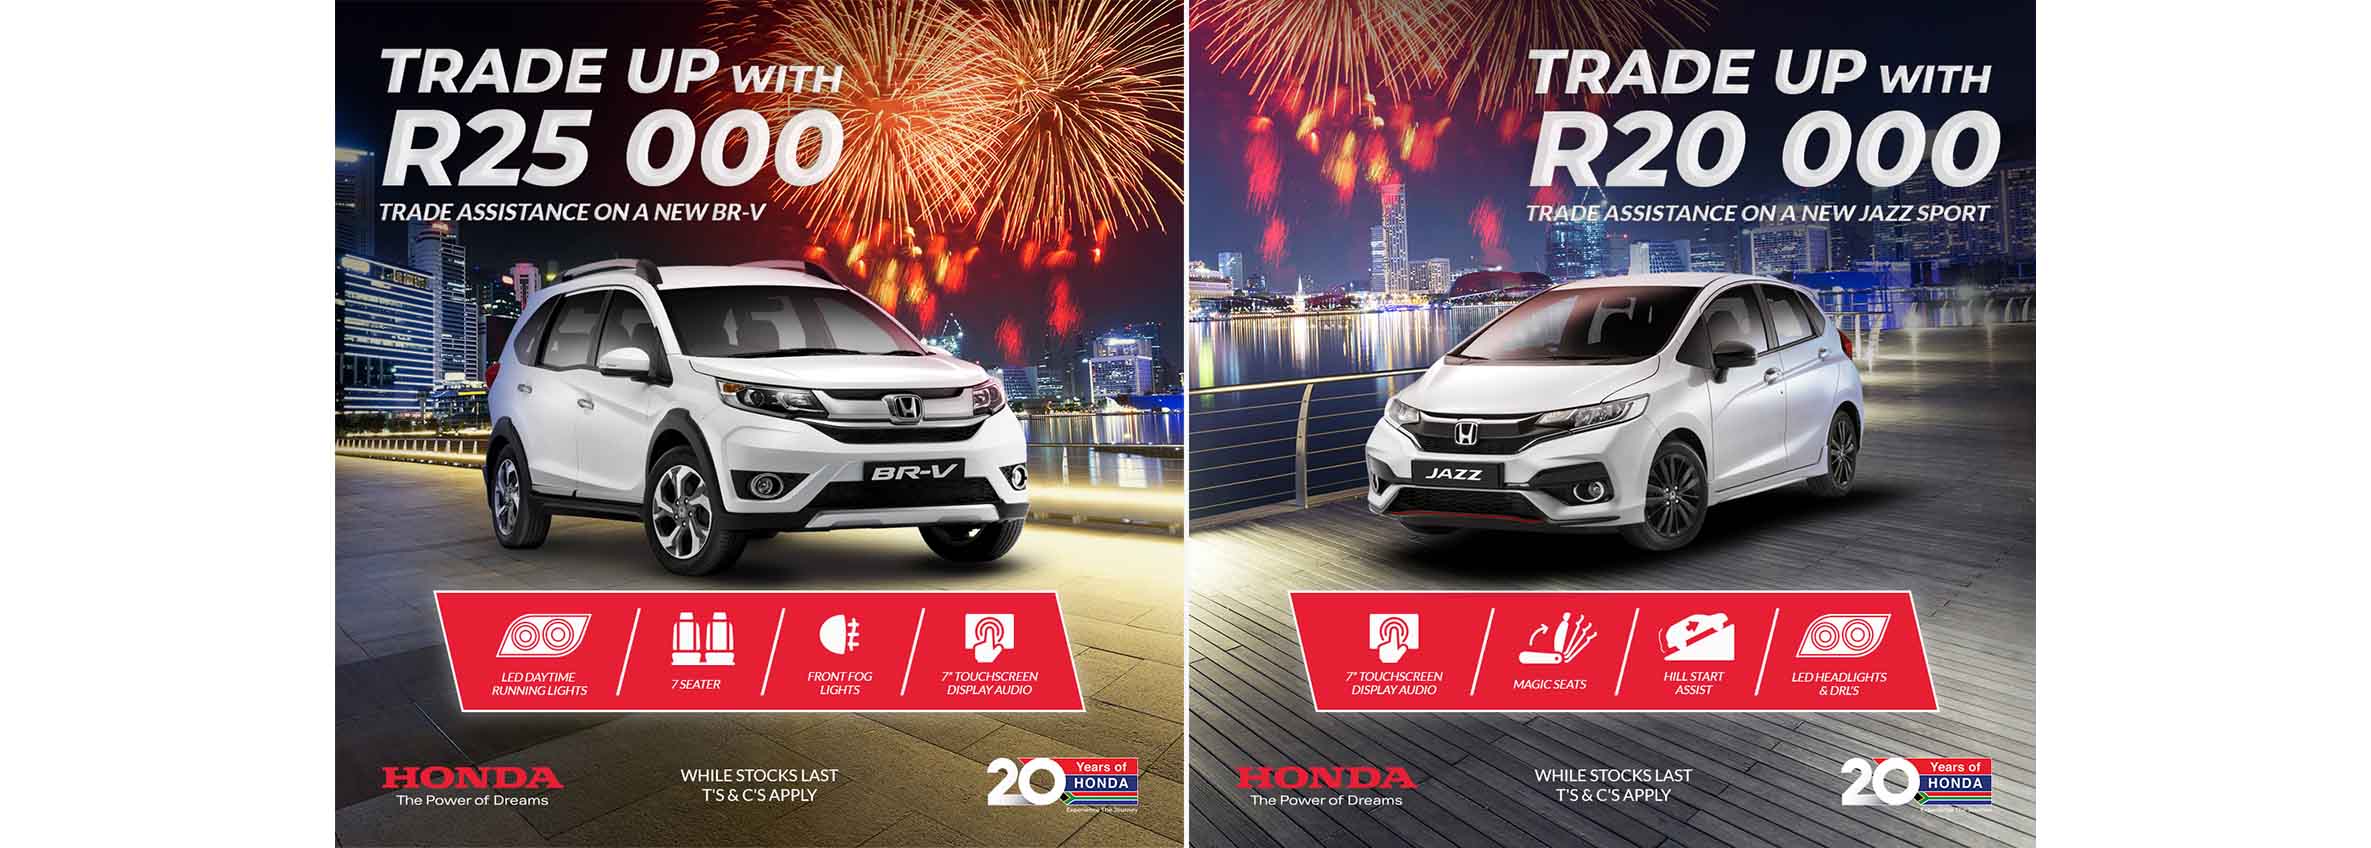 Honda announces Trade Up campaign